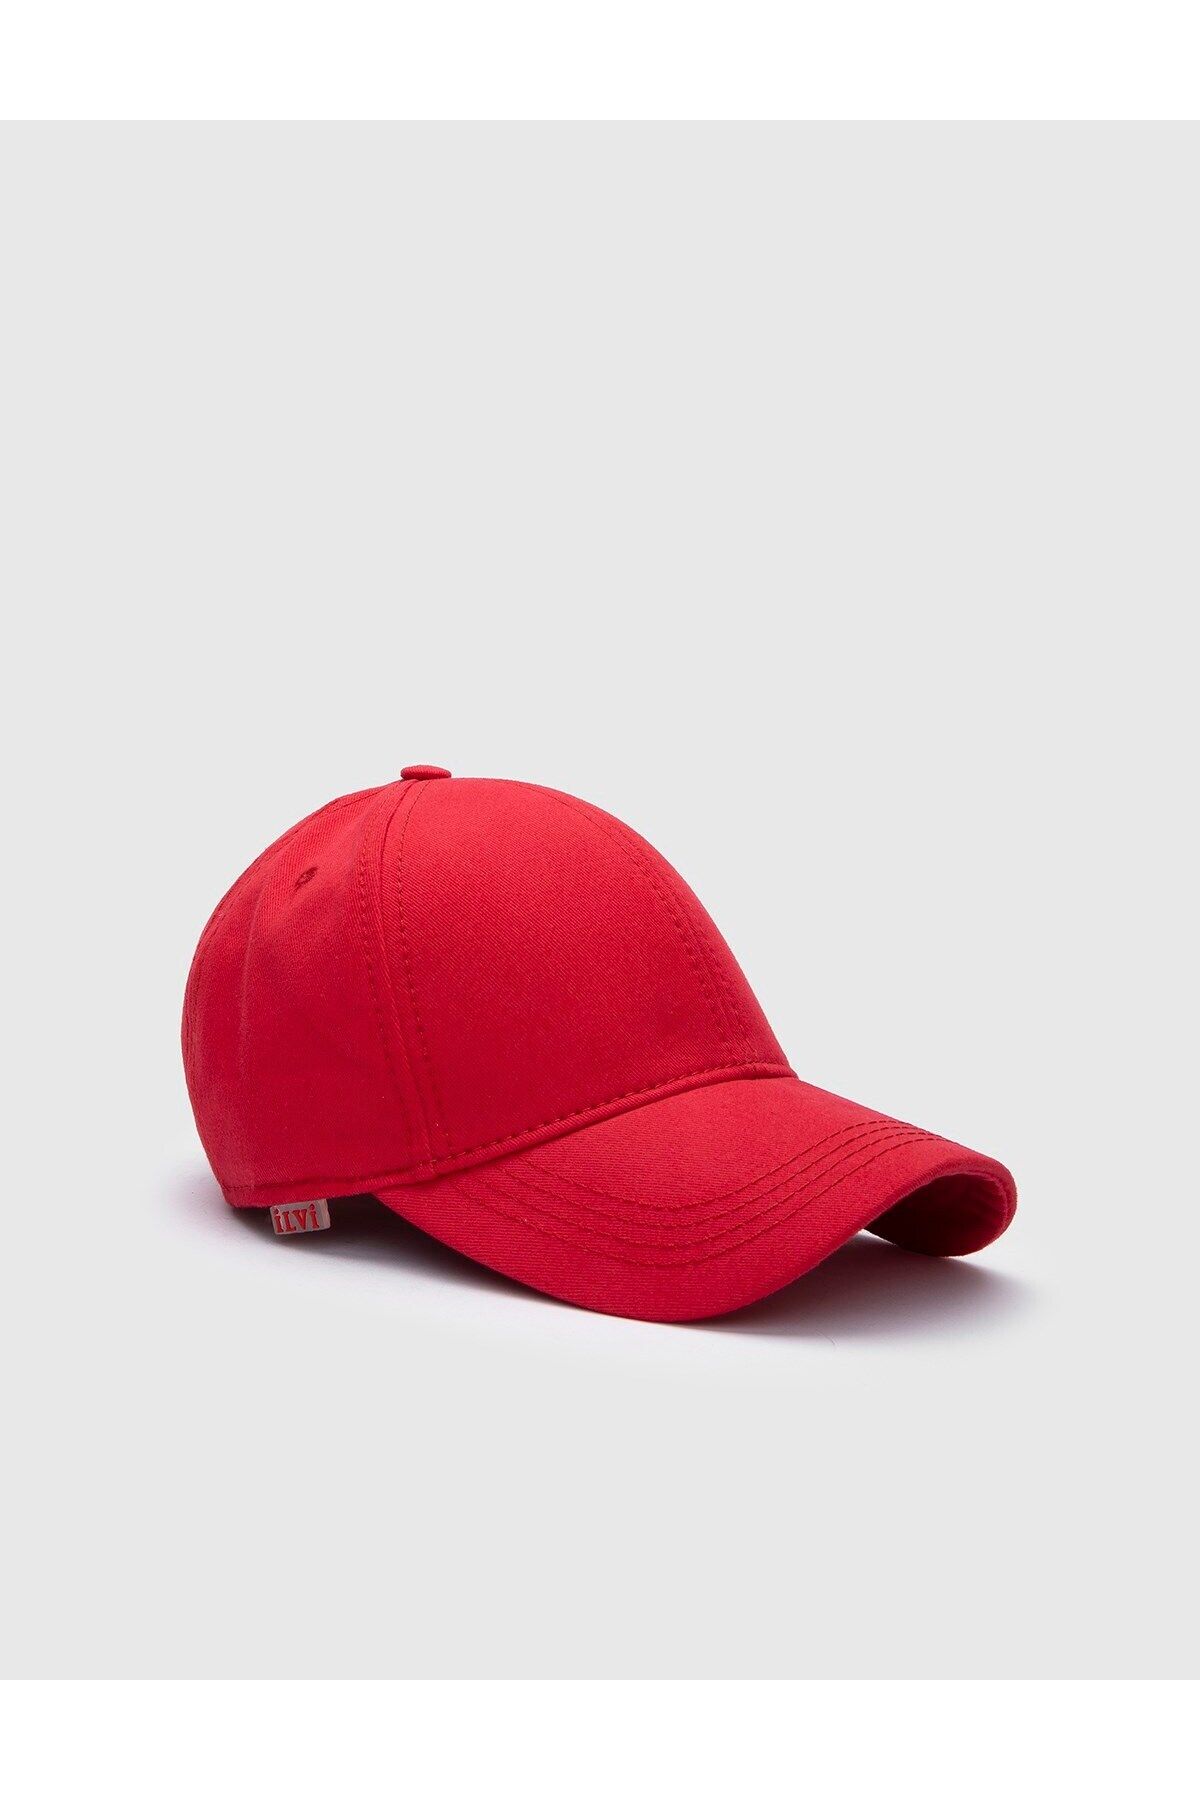 İlvi Even Unisex Şapka Kırmızı Gabardin